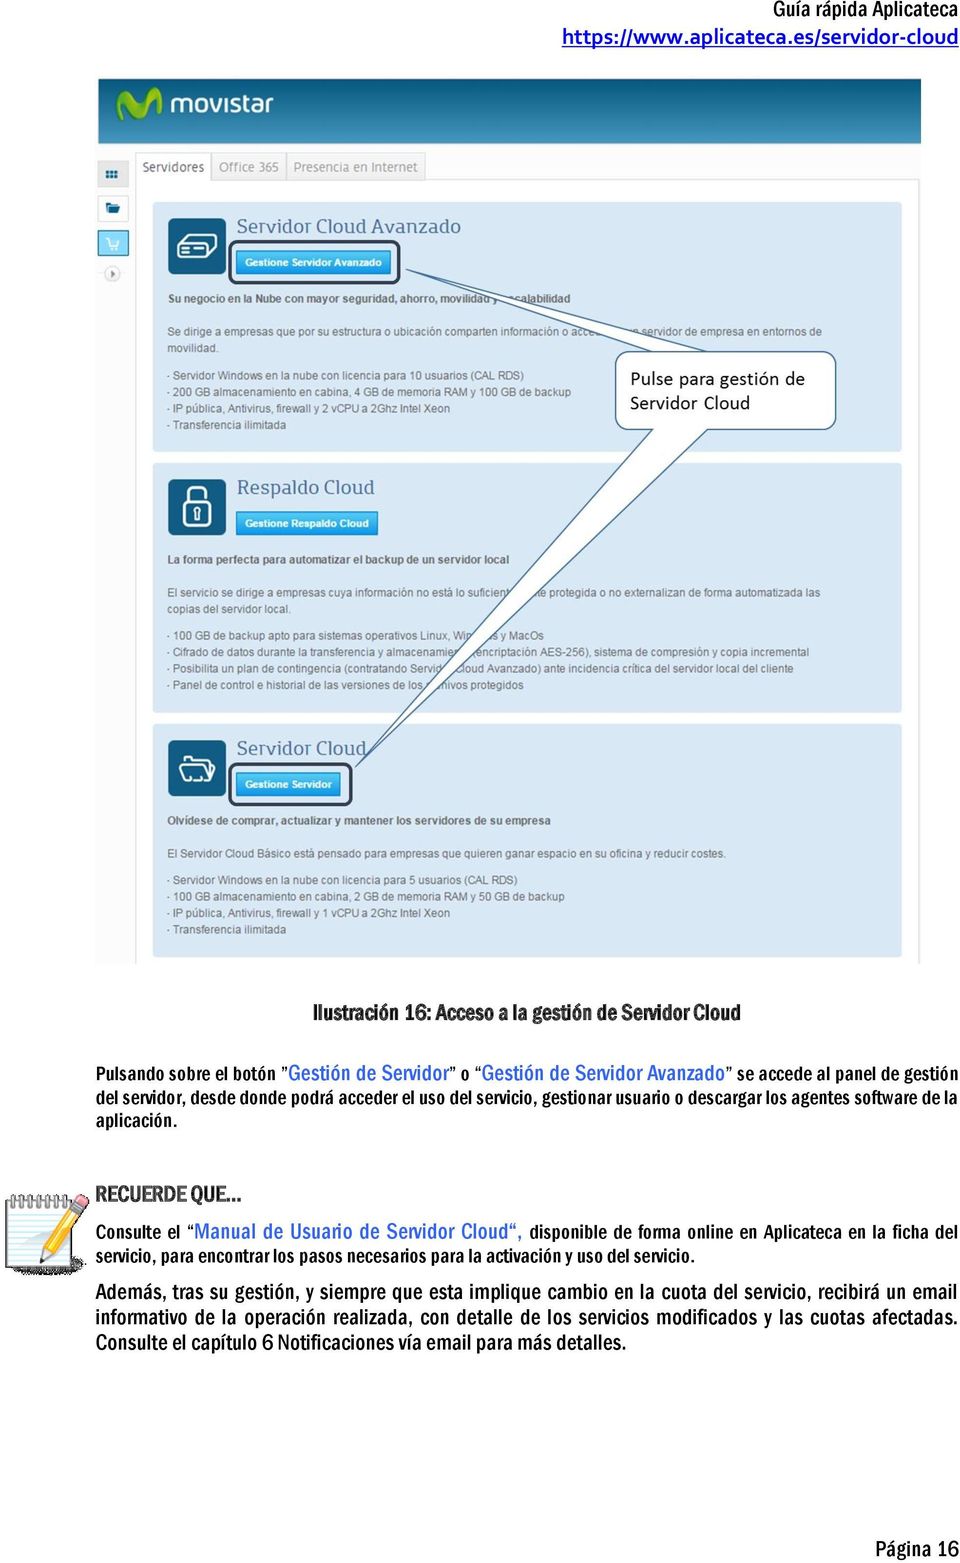 RECUERDE QUE Consulte el Manual de Usuario de Servidor Cloud, disponible de forma online en Aplicateca en la ficha del servicio, para encontrar los pasos necesarios para la activación y uso del